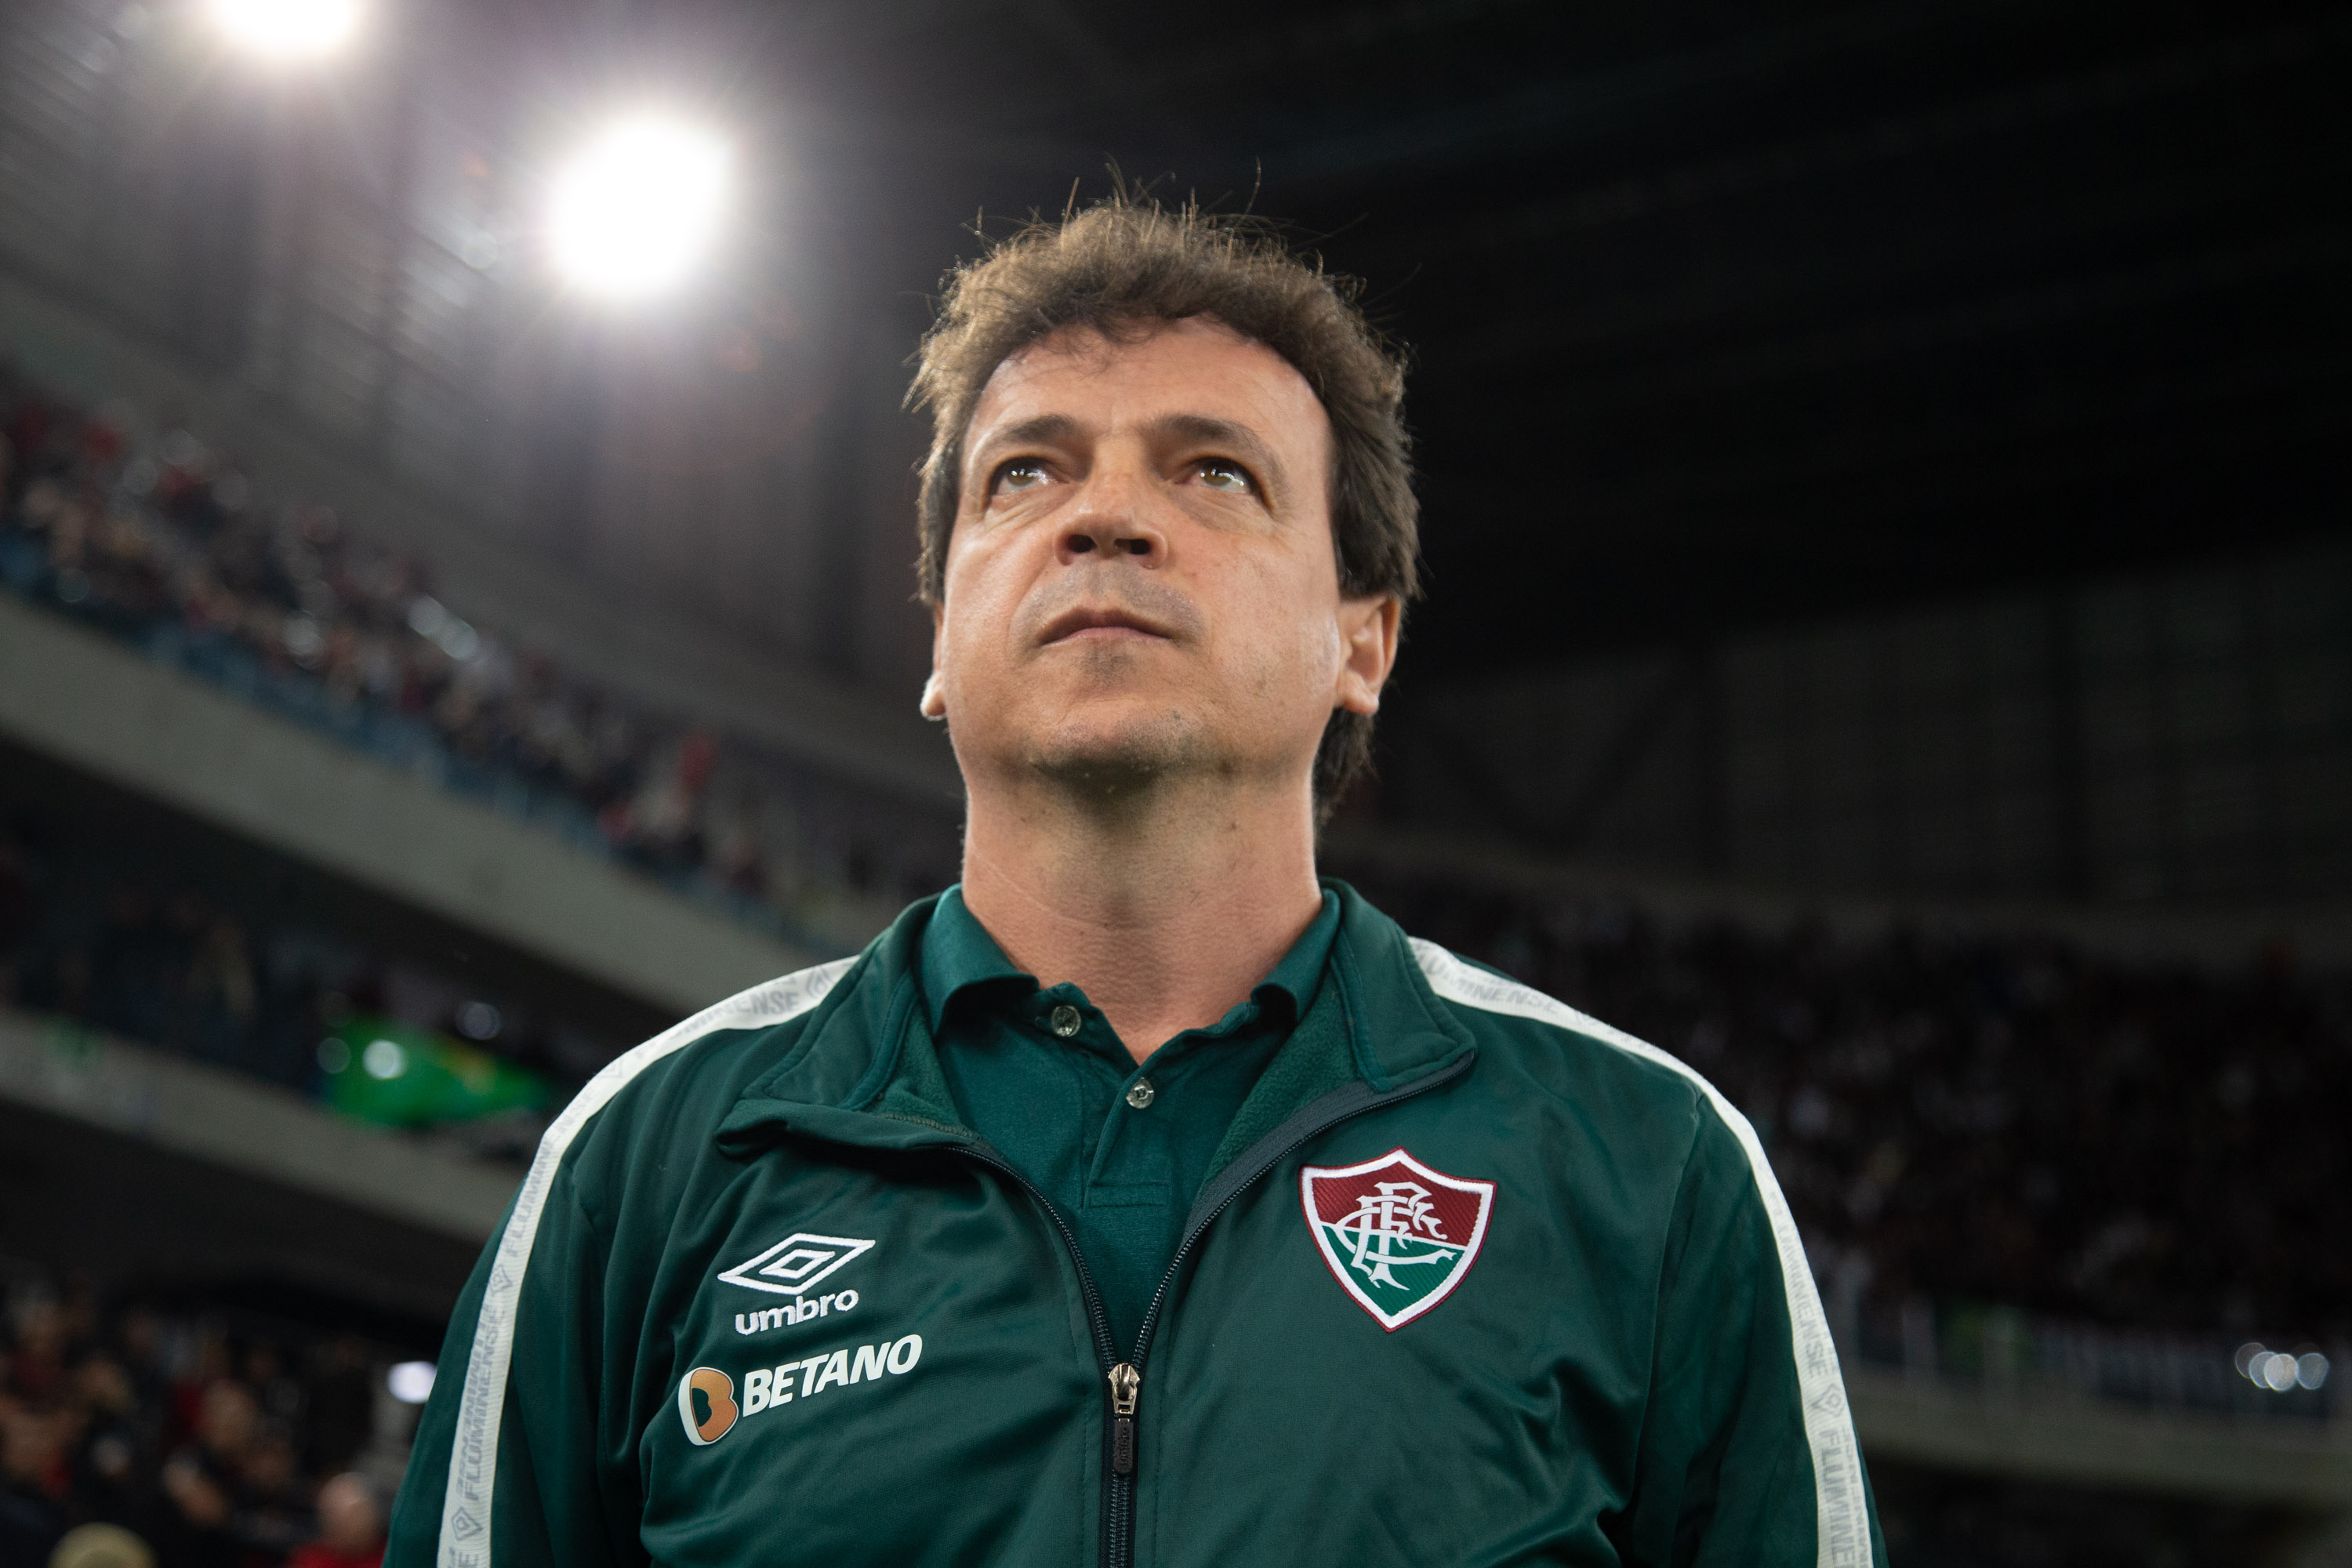 Sem Kauã Elias e Arthur, Fluminense divulga lista de inscritos